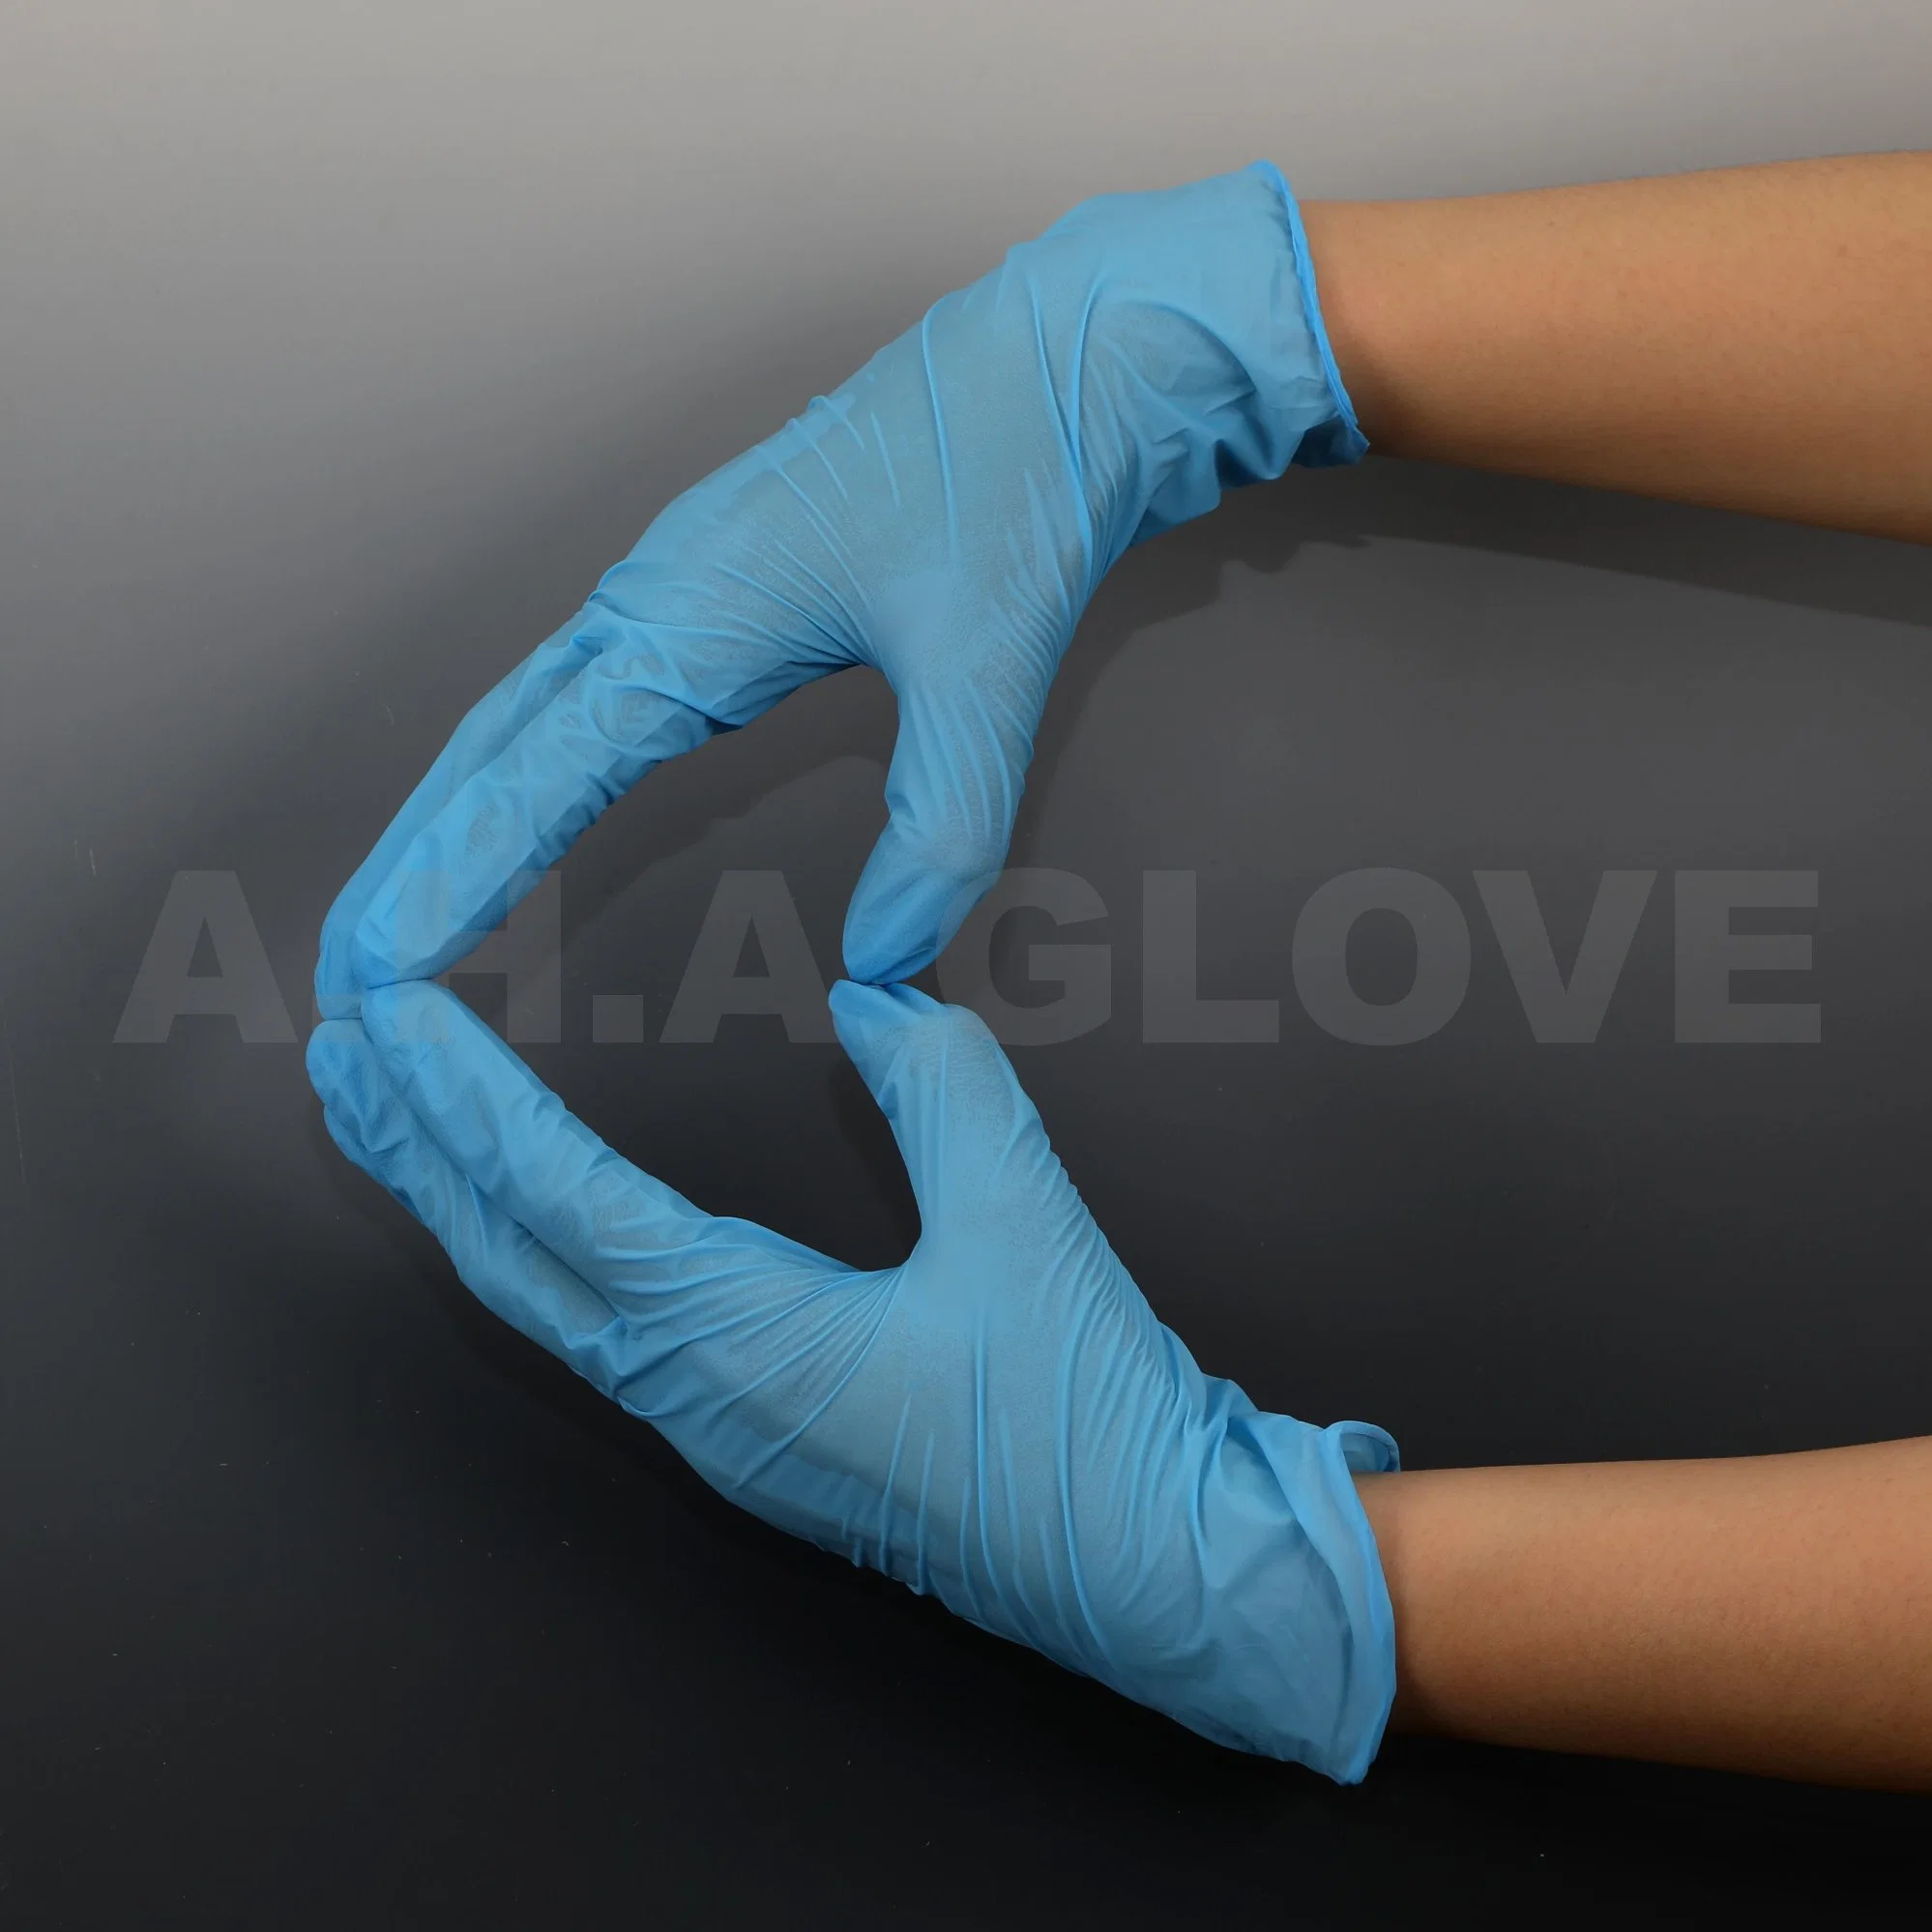 Guter Preis 100PCS Box Einweg Blue Exam Safety Medical Nitril Handschuhe Für Chirurgische Untersuchungen